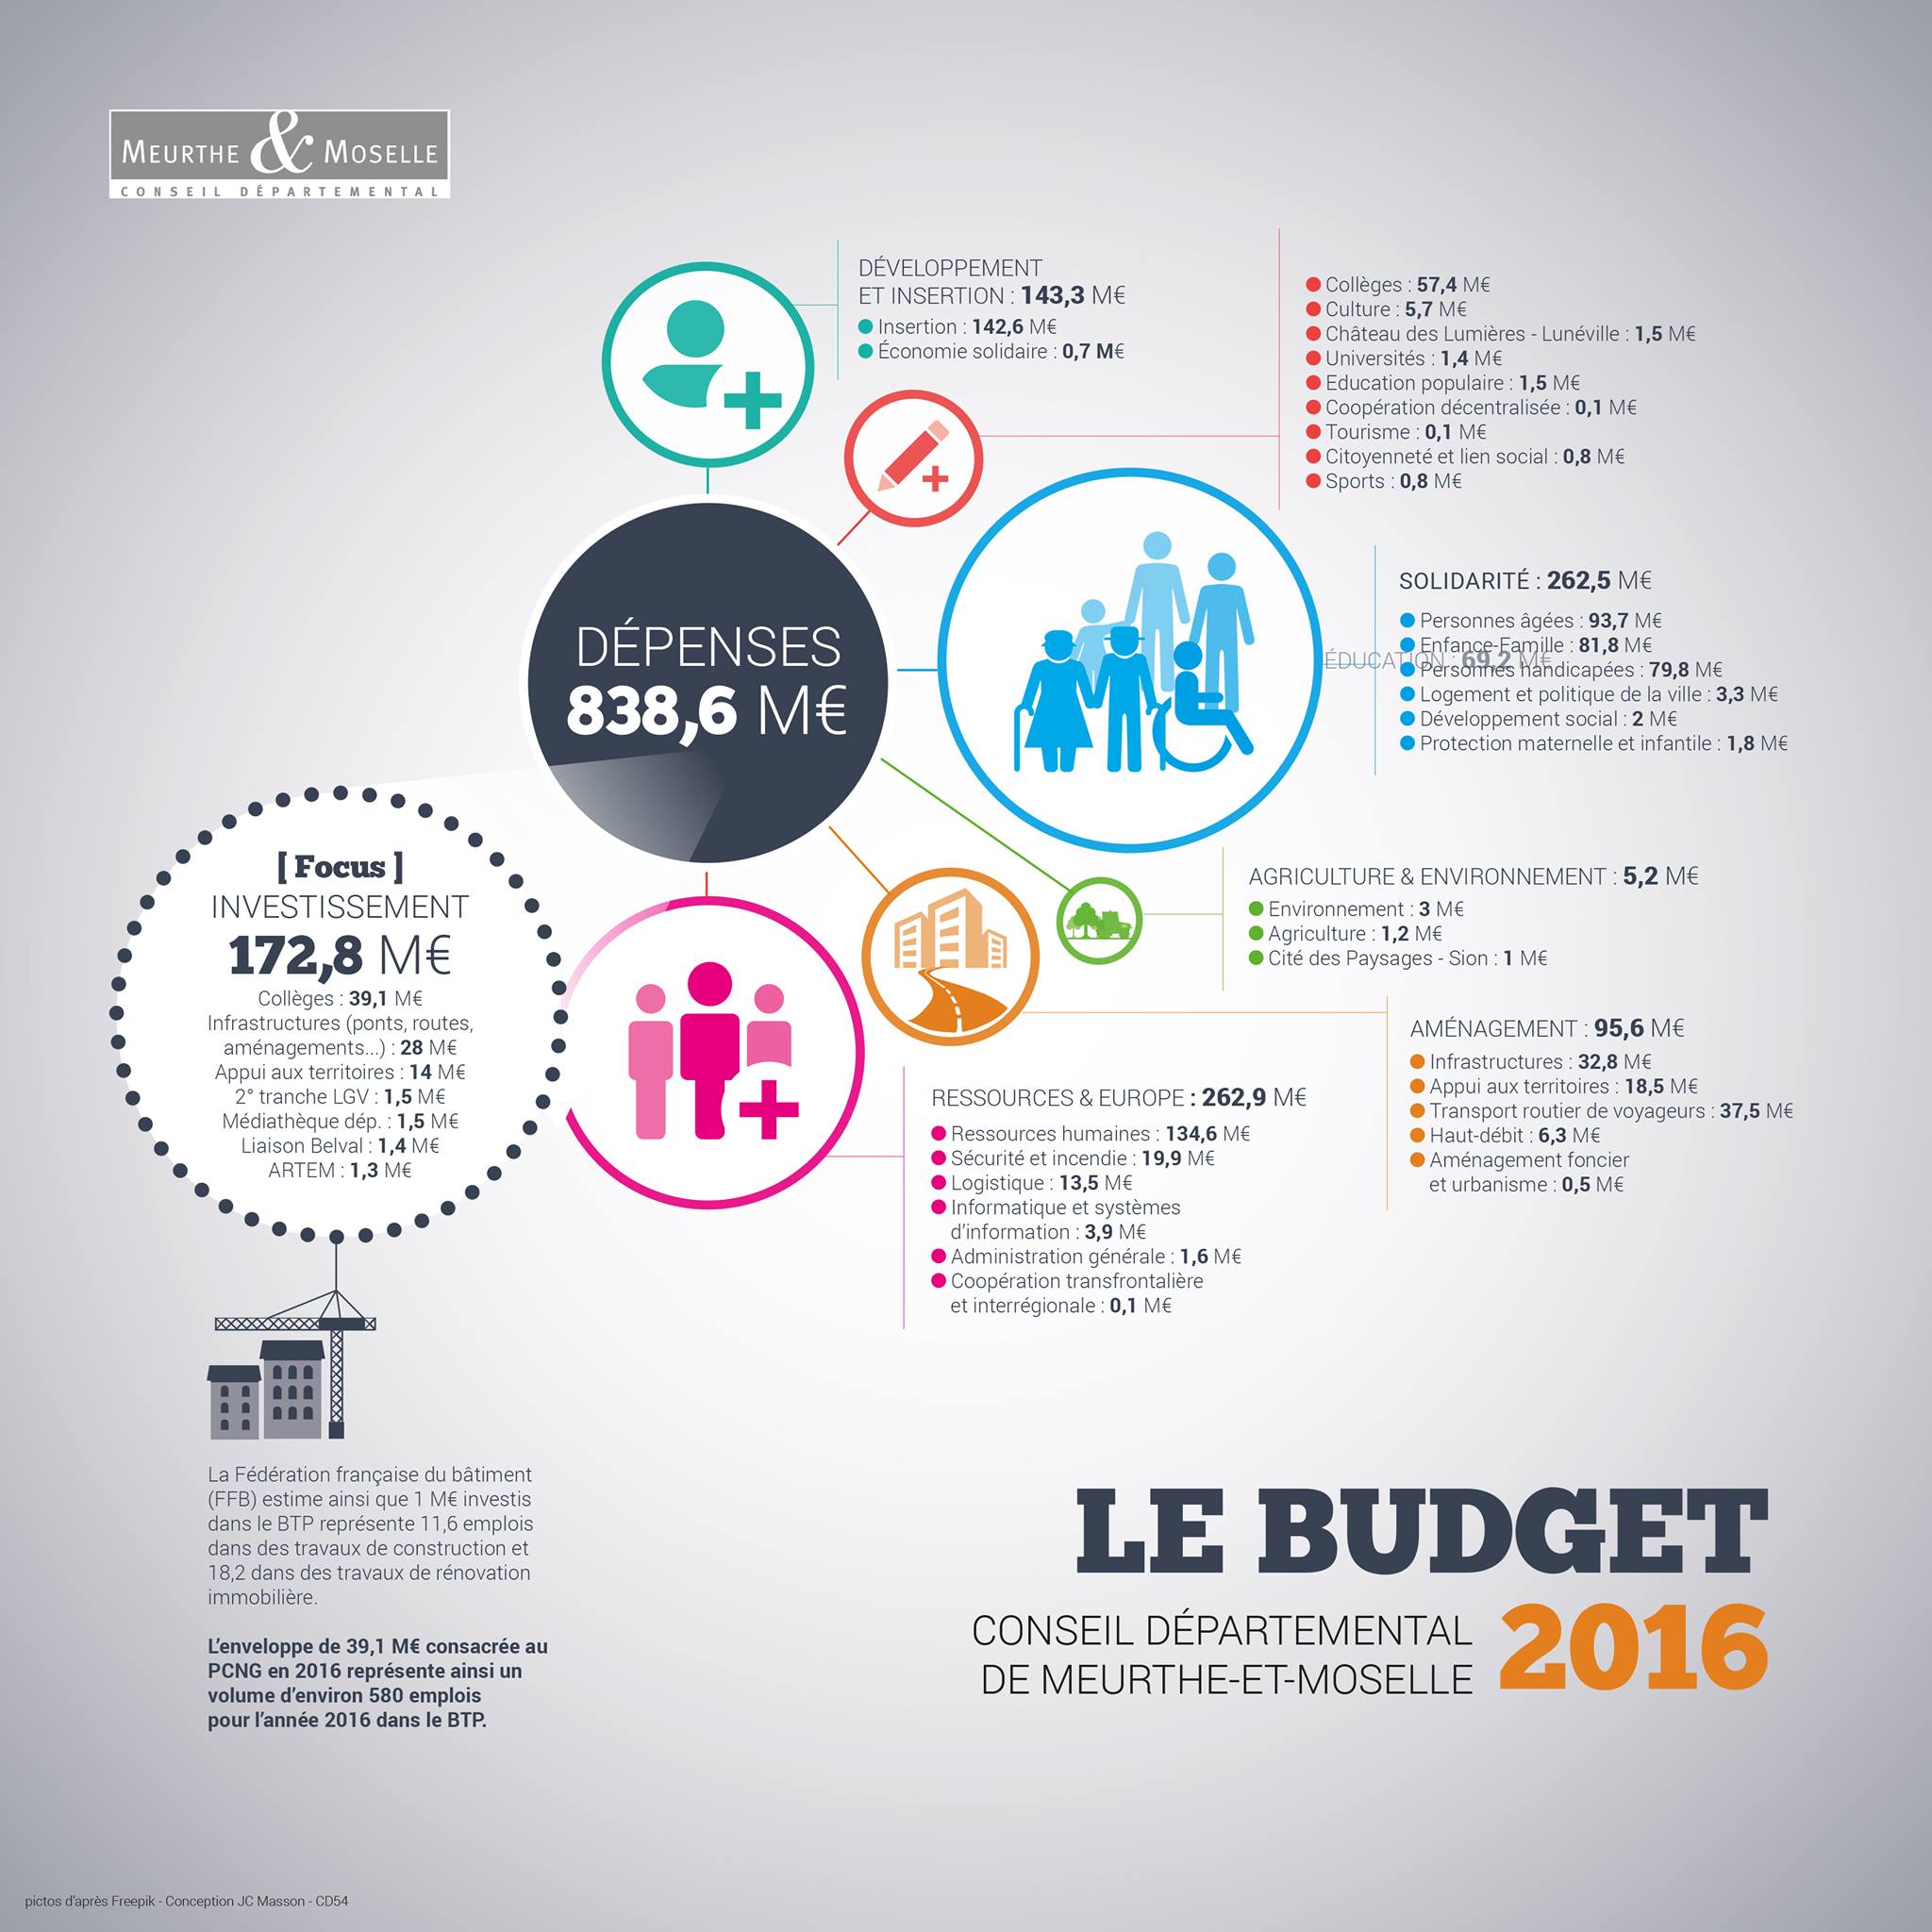 Budget 2016 du Conseil départemental de Meurthe-et-Moselle : un budget de responsabilité et d’engagement